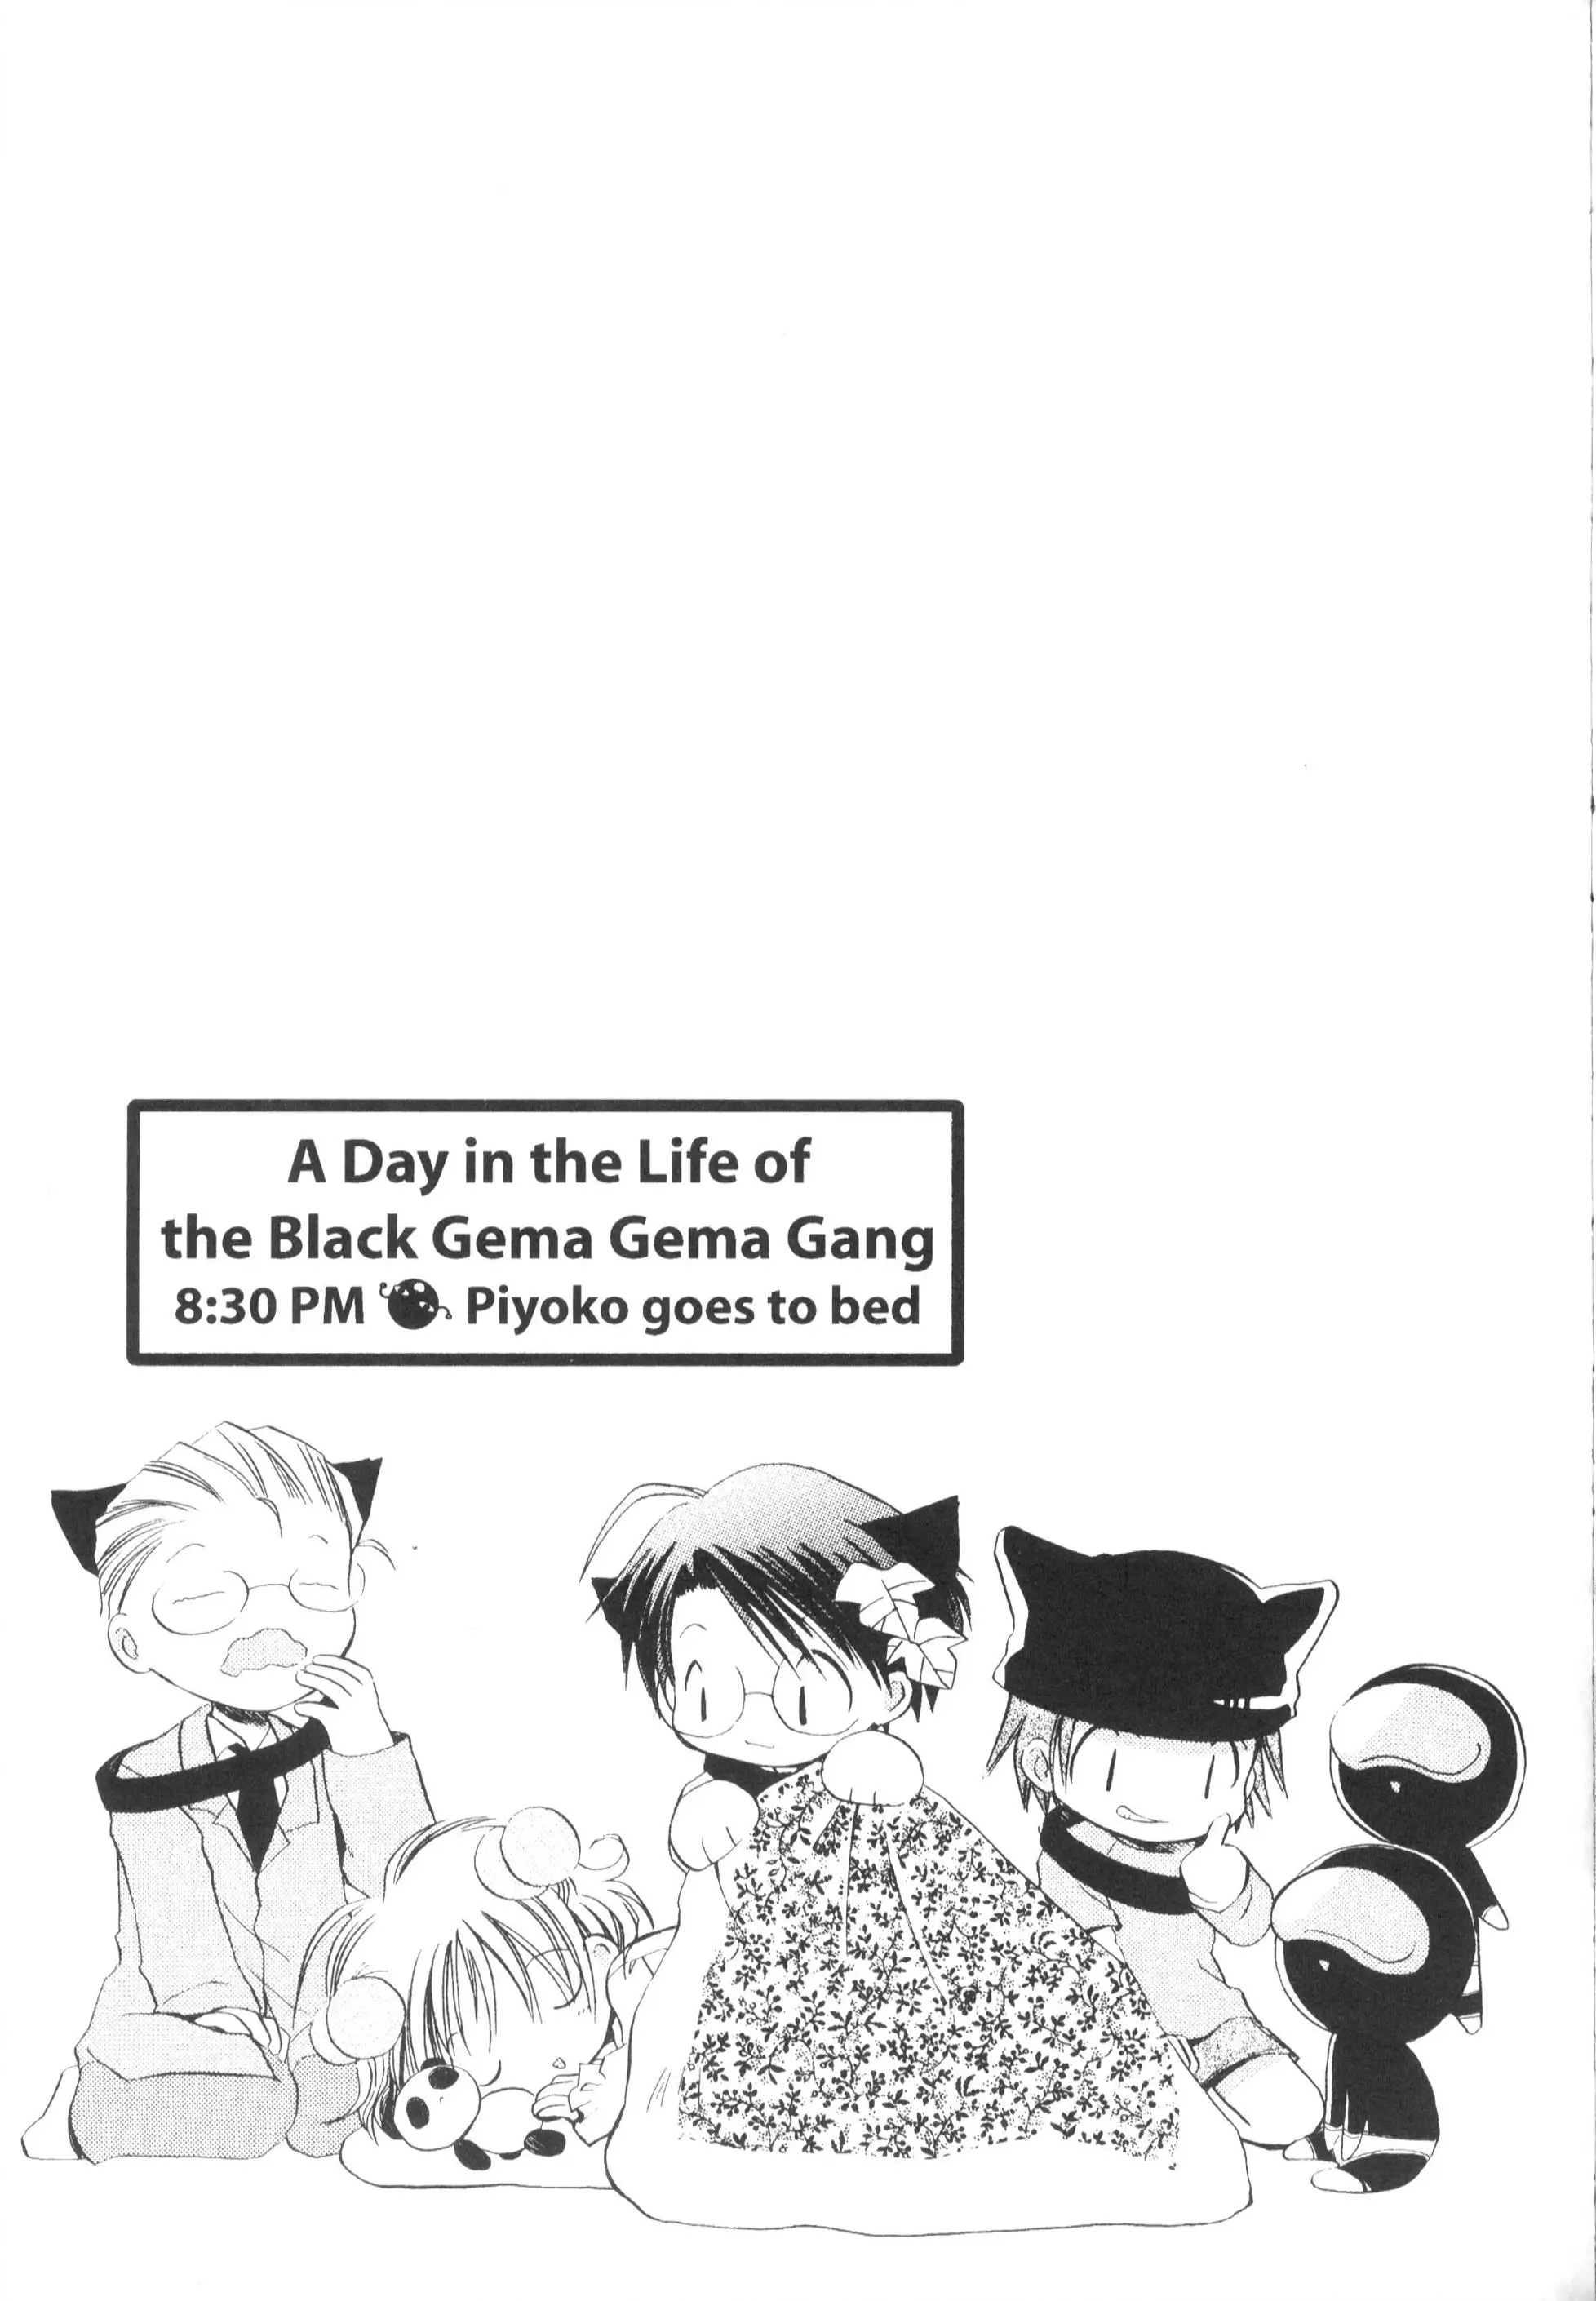 Di Gi Charat Theater: Leave It To Piyoko! - 16 page 10-bc19b4b5